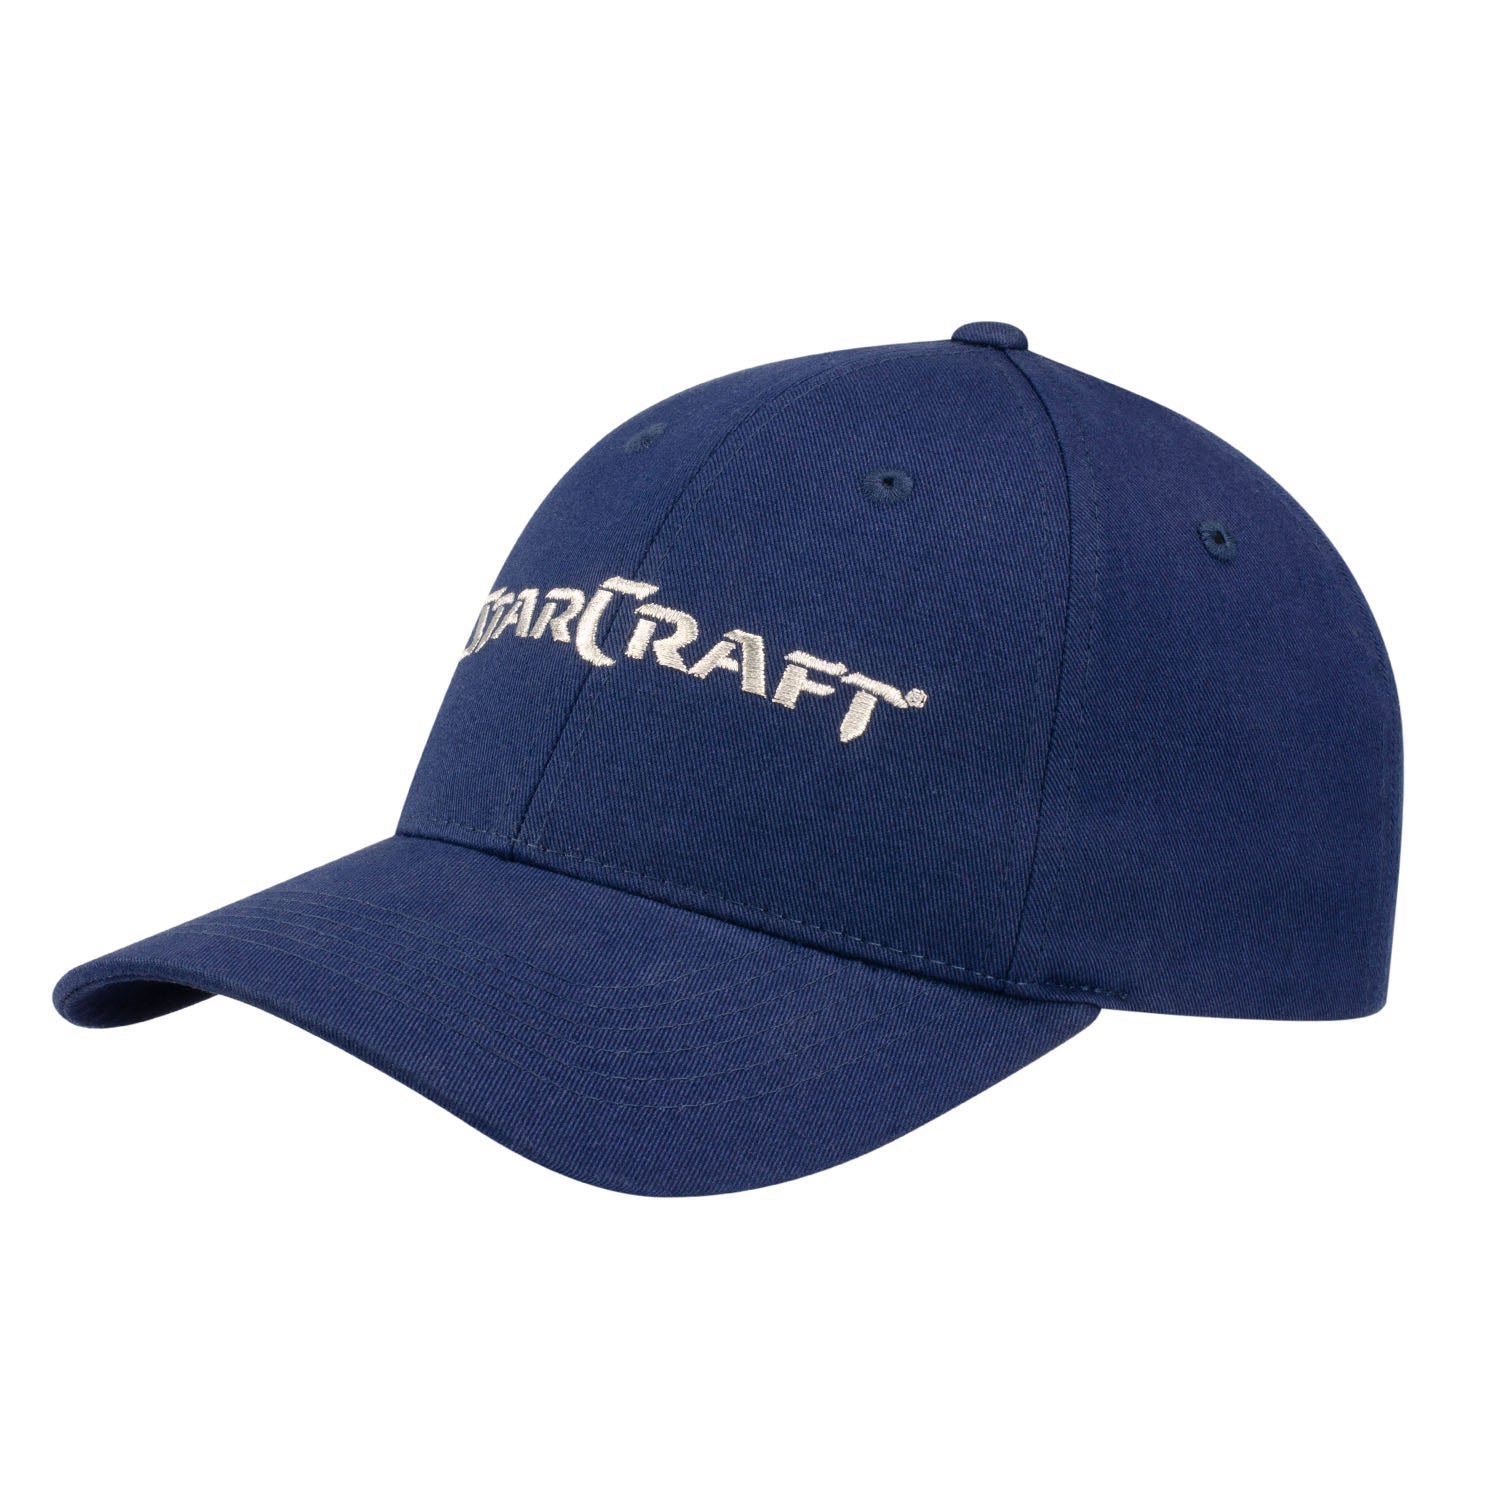 StarCraft Navy Dad Hat - Left View